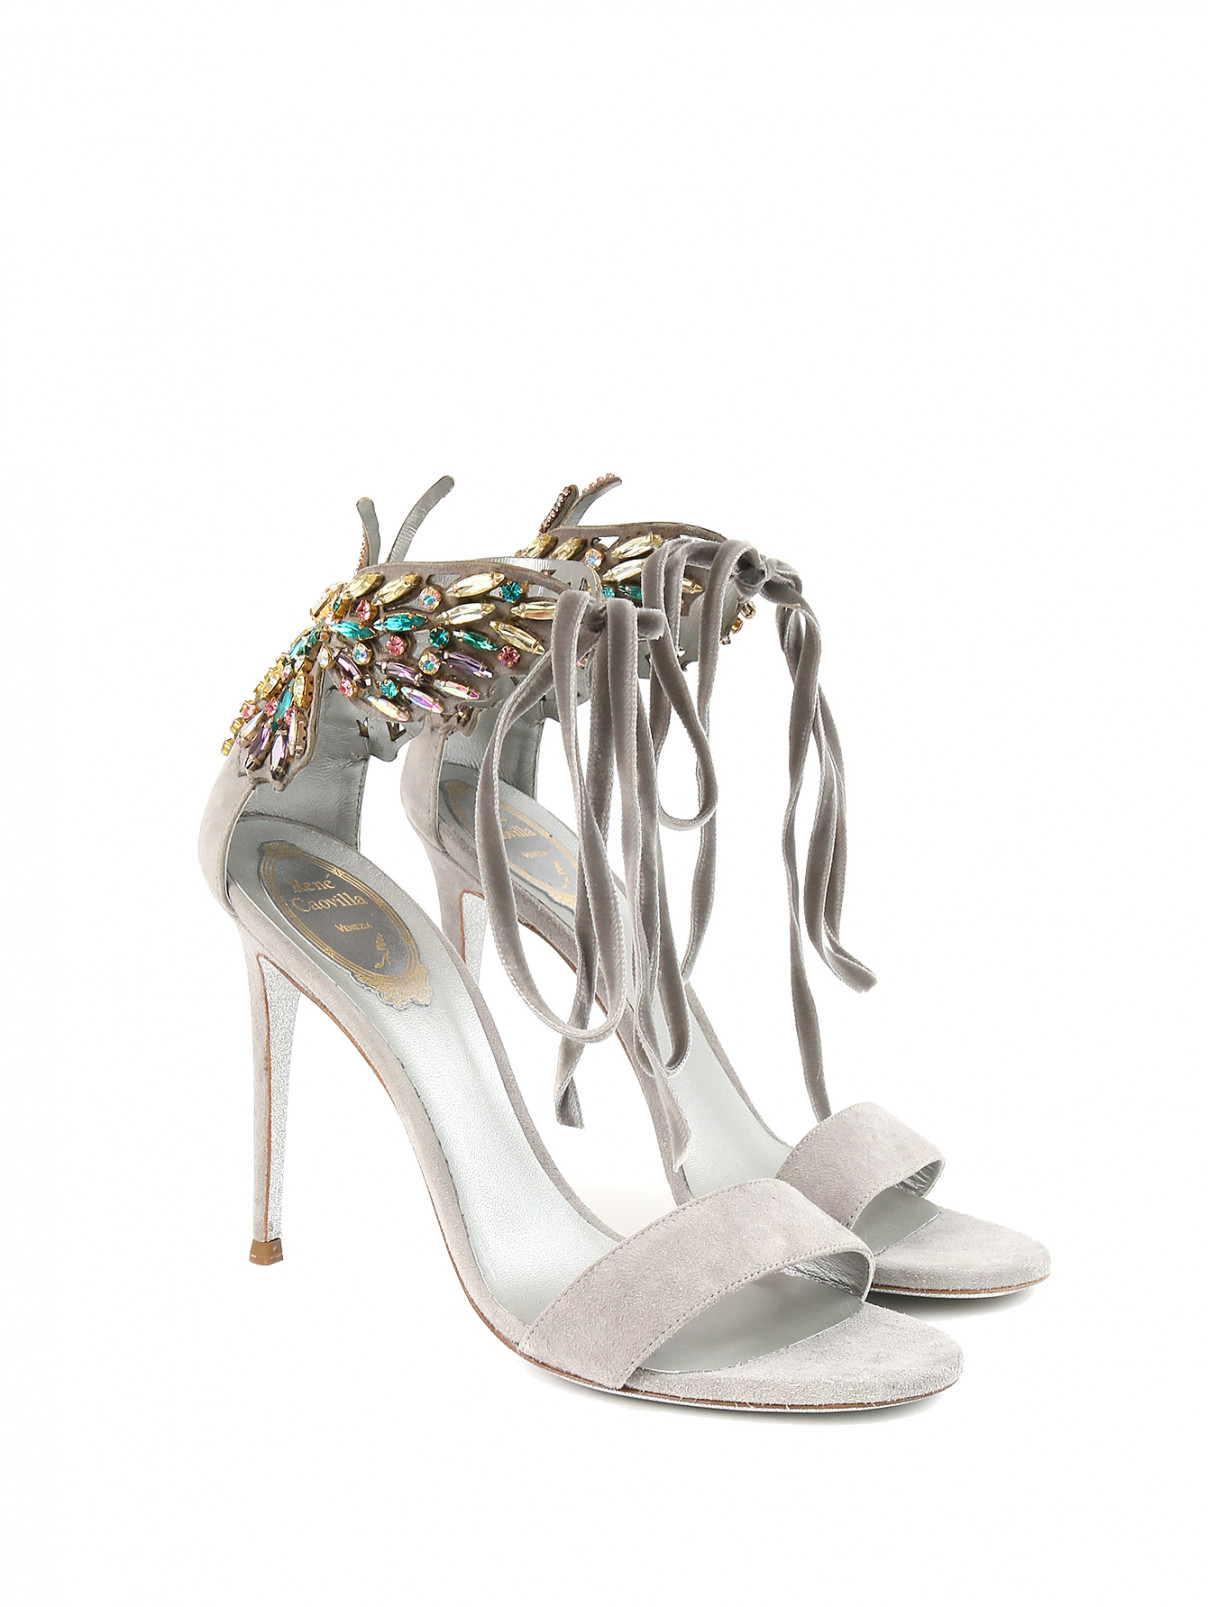 Босоножки из замши с декором на высоком каблуке Rene Caovilla  –  Общий вид  – Цвет:  Серый